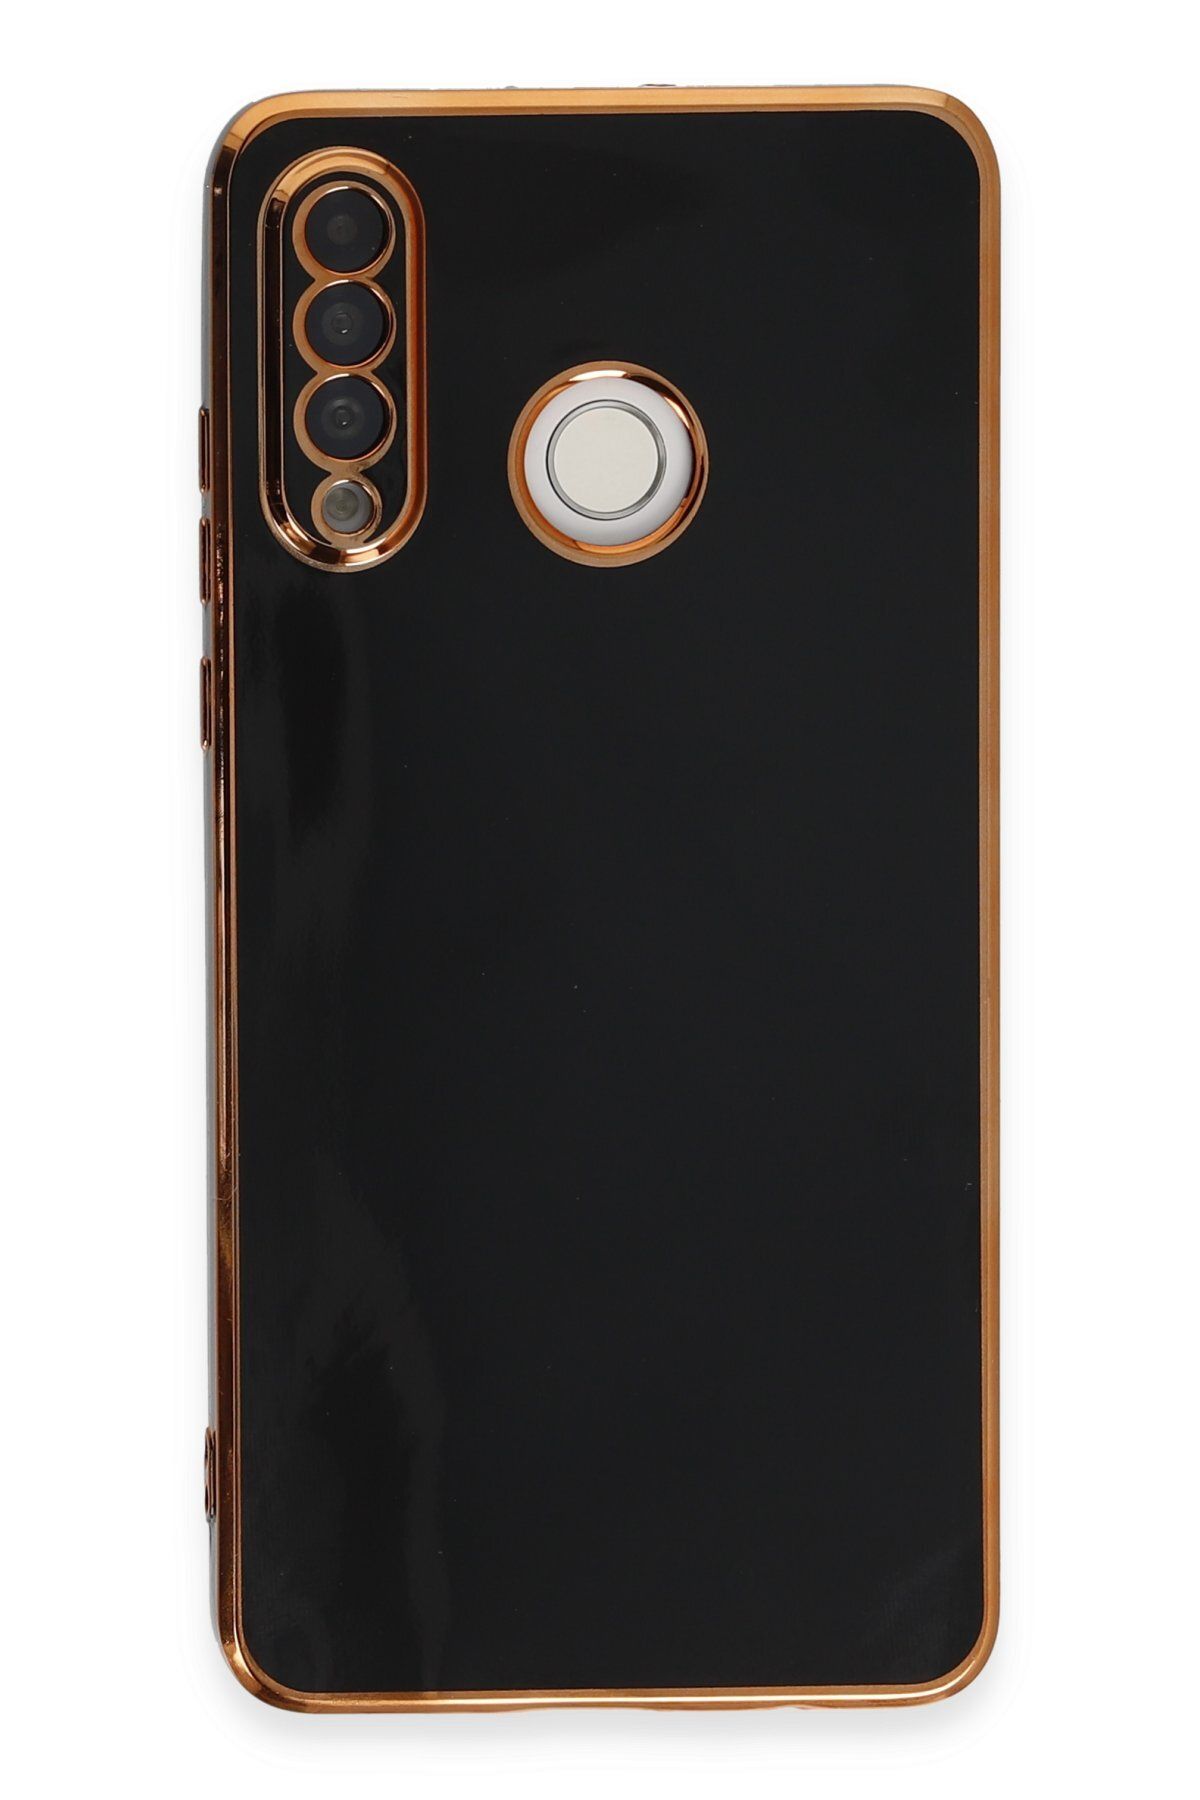 AQUA AKSESUAR Huawei P30 Lite Uyumlu Parlak Altın Kenarlı Kamera Korumalı Dayanıklı Kılıf - Siyah